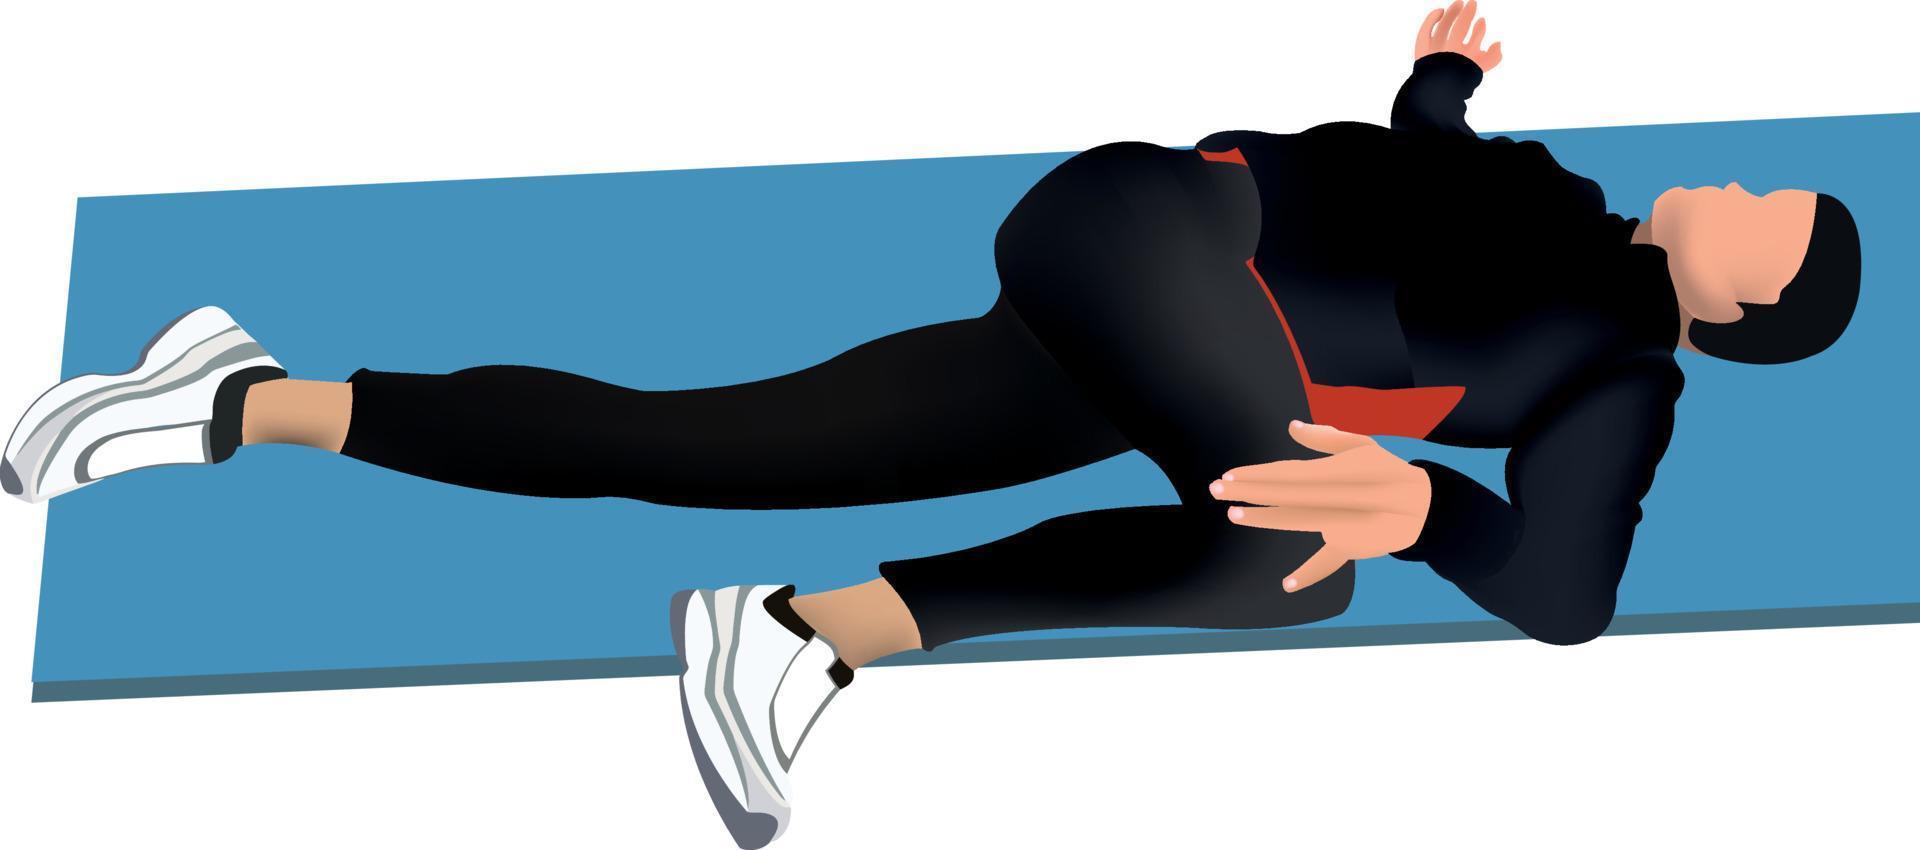 ejercicio de gimnasia postural. la ilustración muestra a un hombre sobre una colchoneta realizando un ejercicio de estiramiento. vector